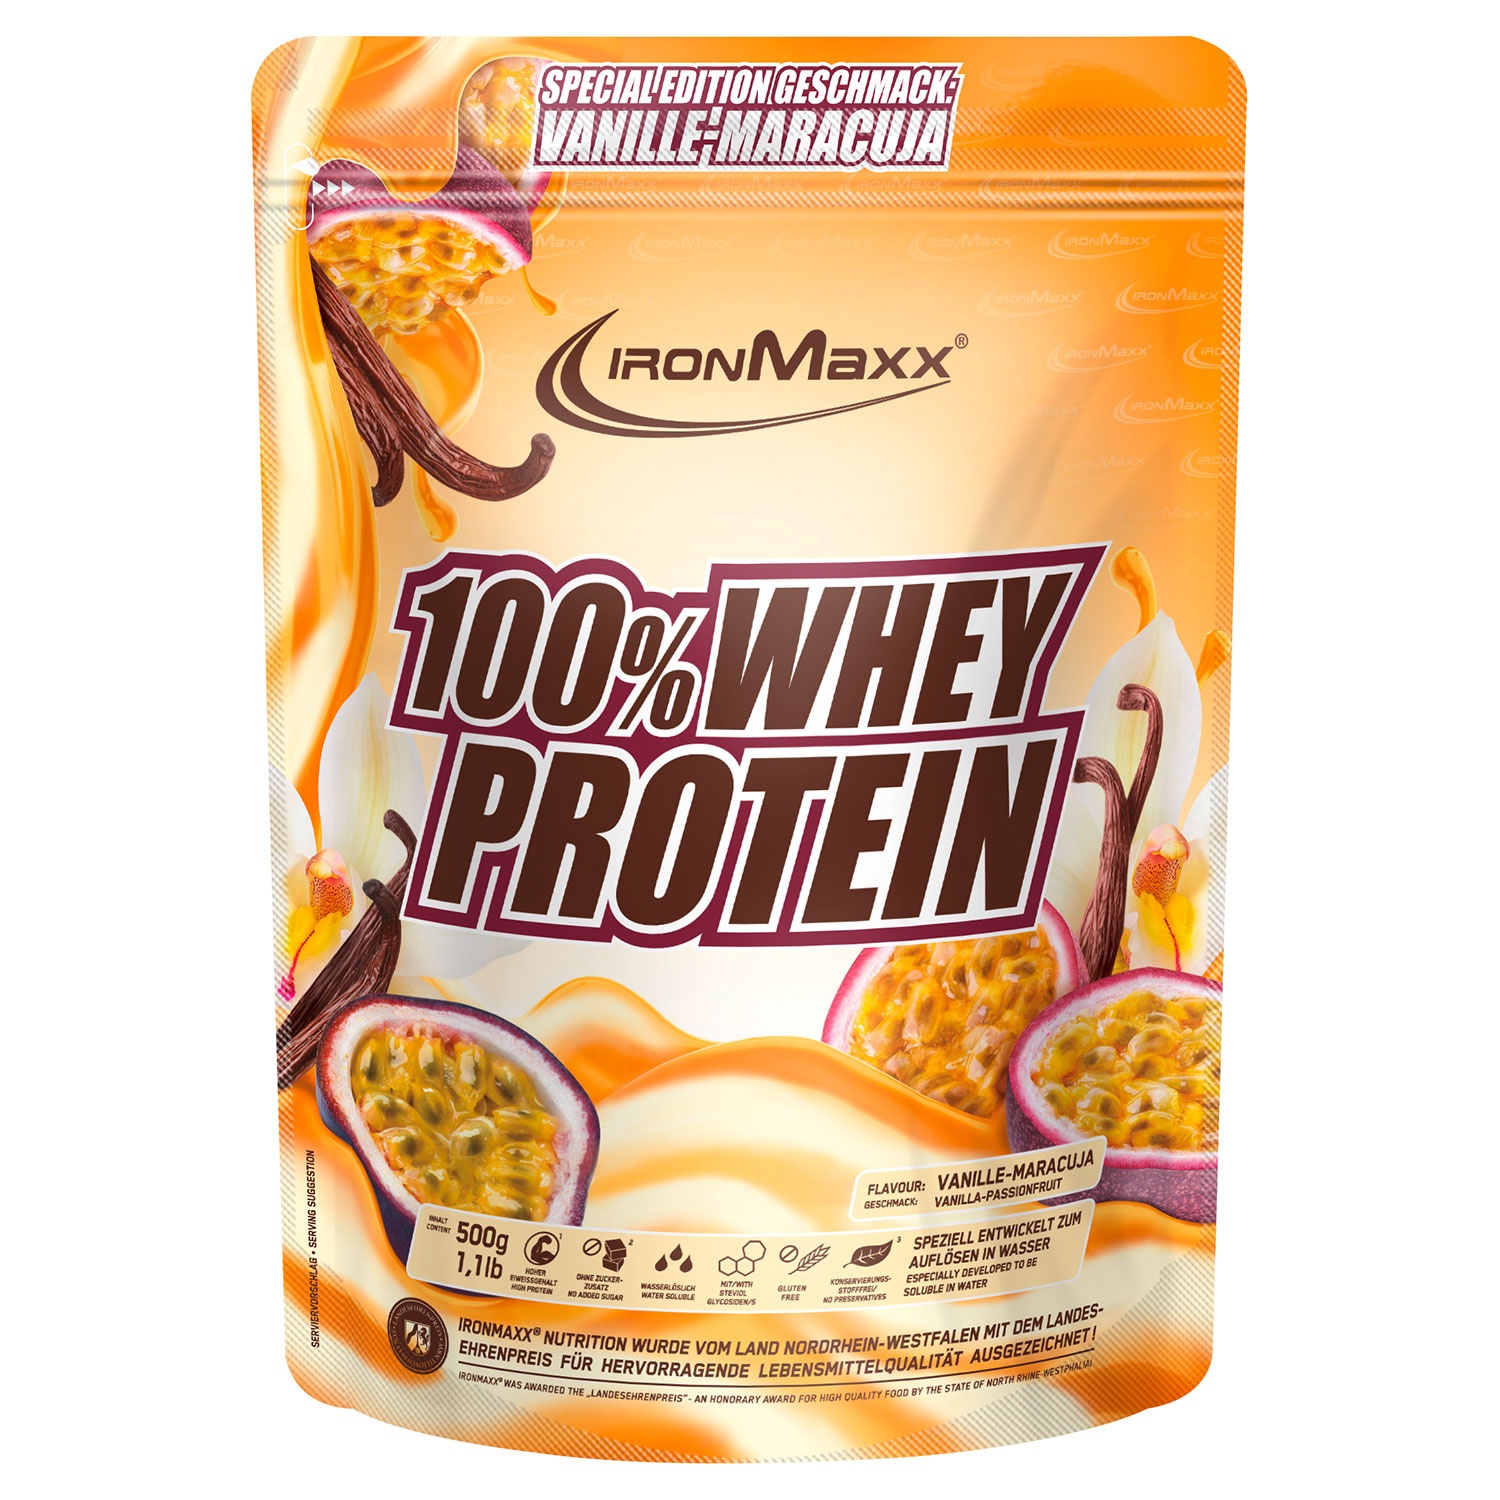 IRONMAXX® Protein-Vielfalt 100 % Whey Protein 500 g